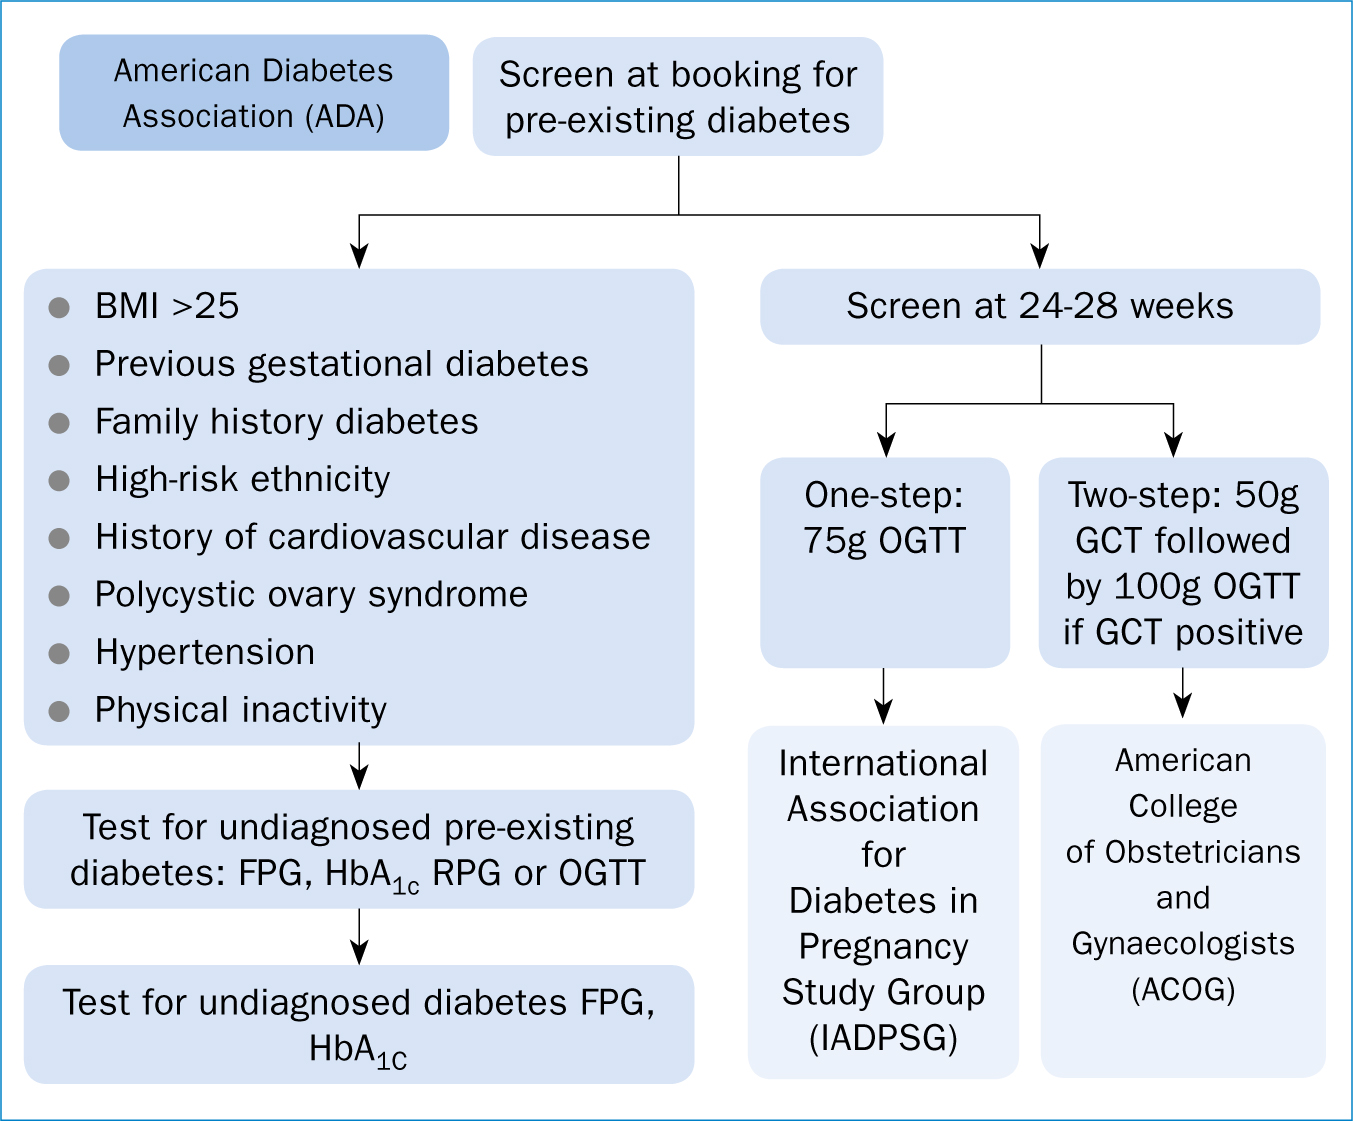 gestational diabetes guidelines acog pdf)